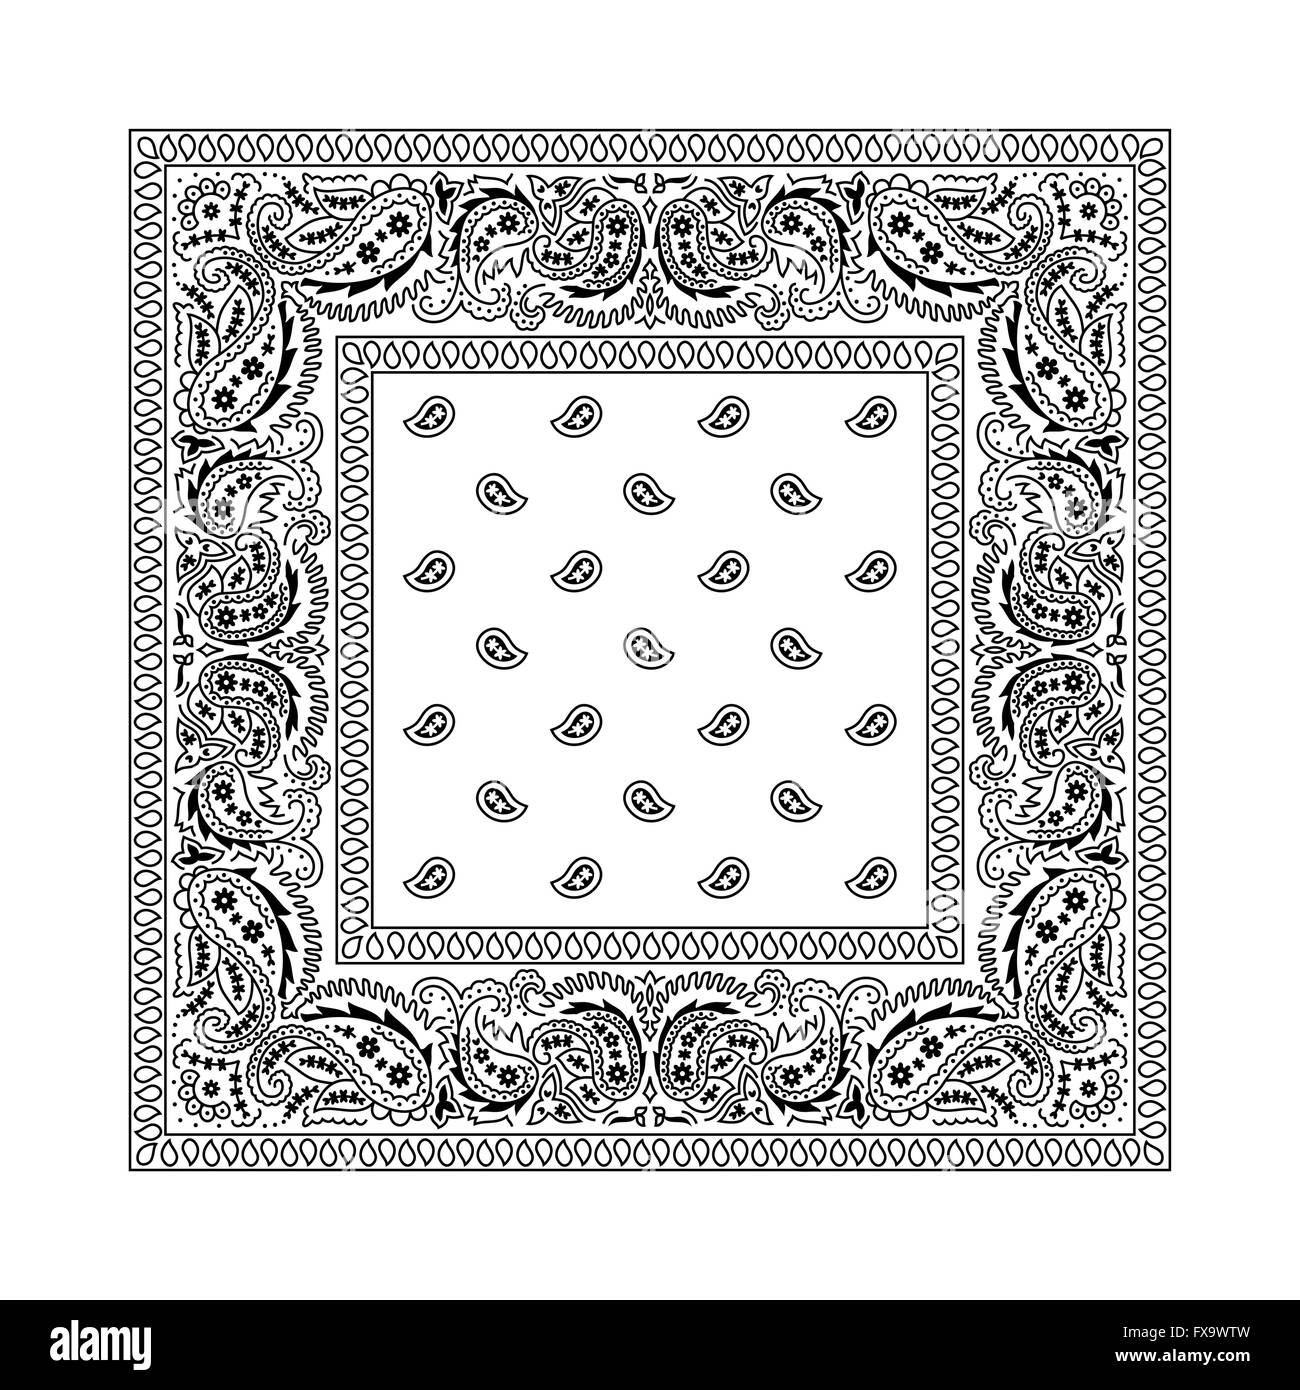 Pañuelo blanco Imágenes de stock en blanco y negro - Página 2 - Alamy